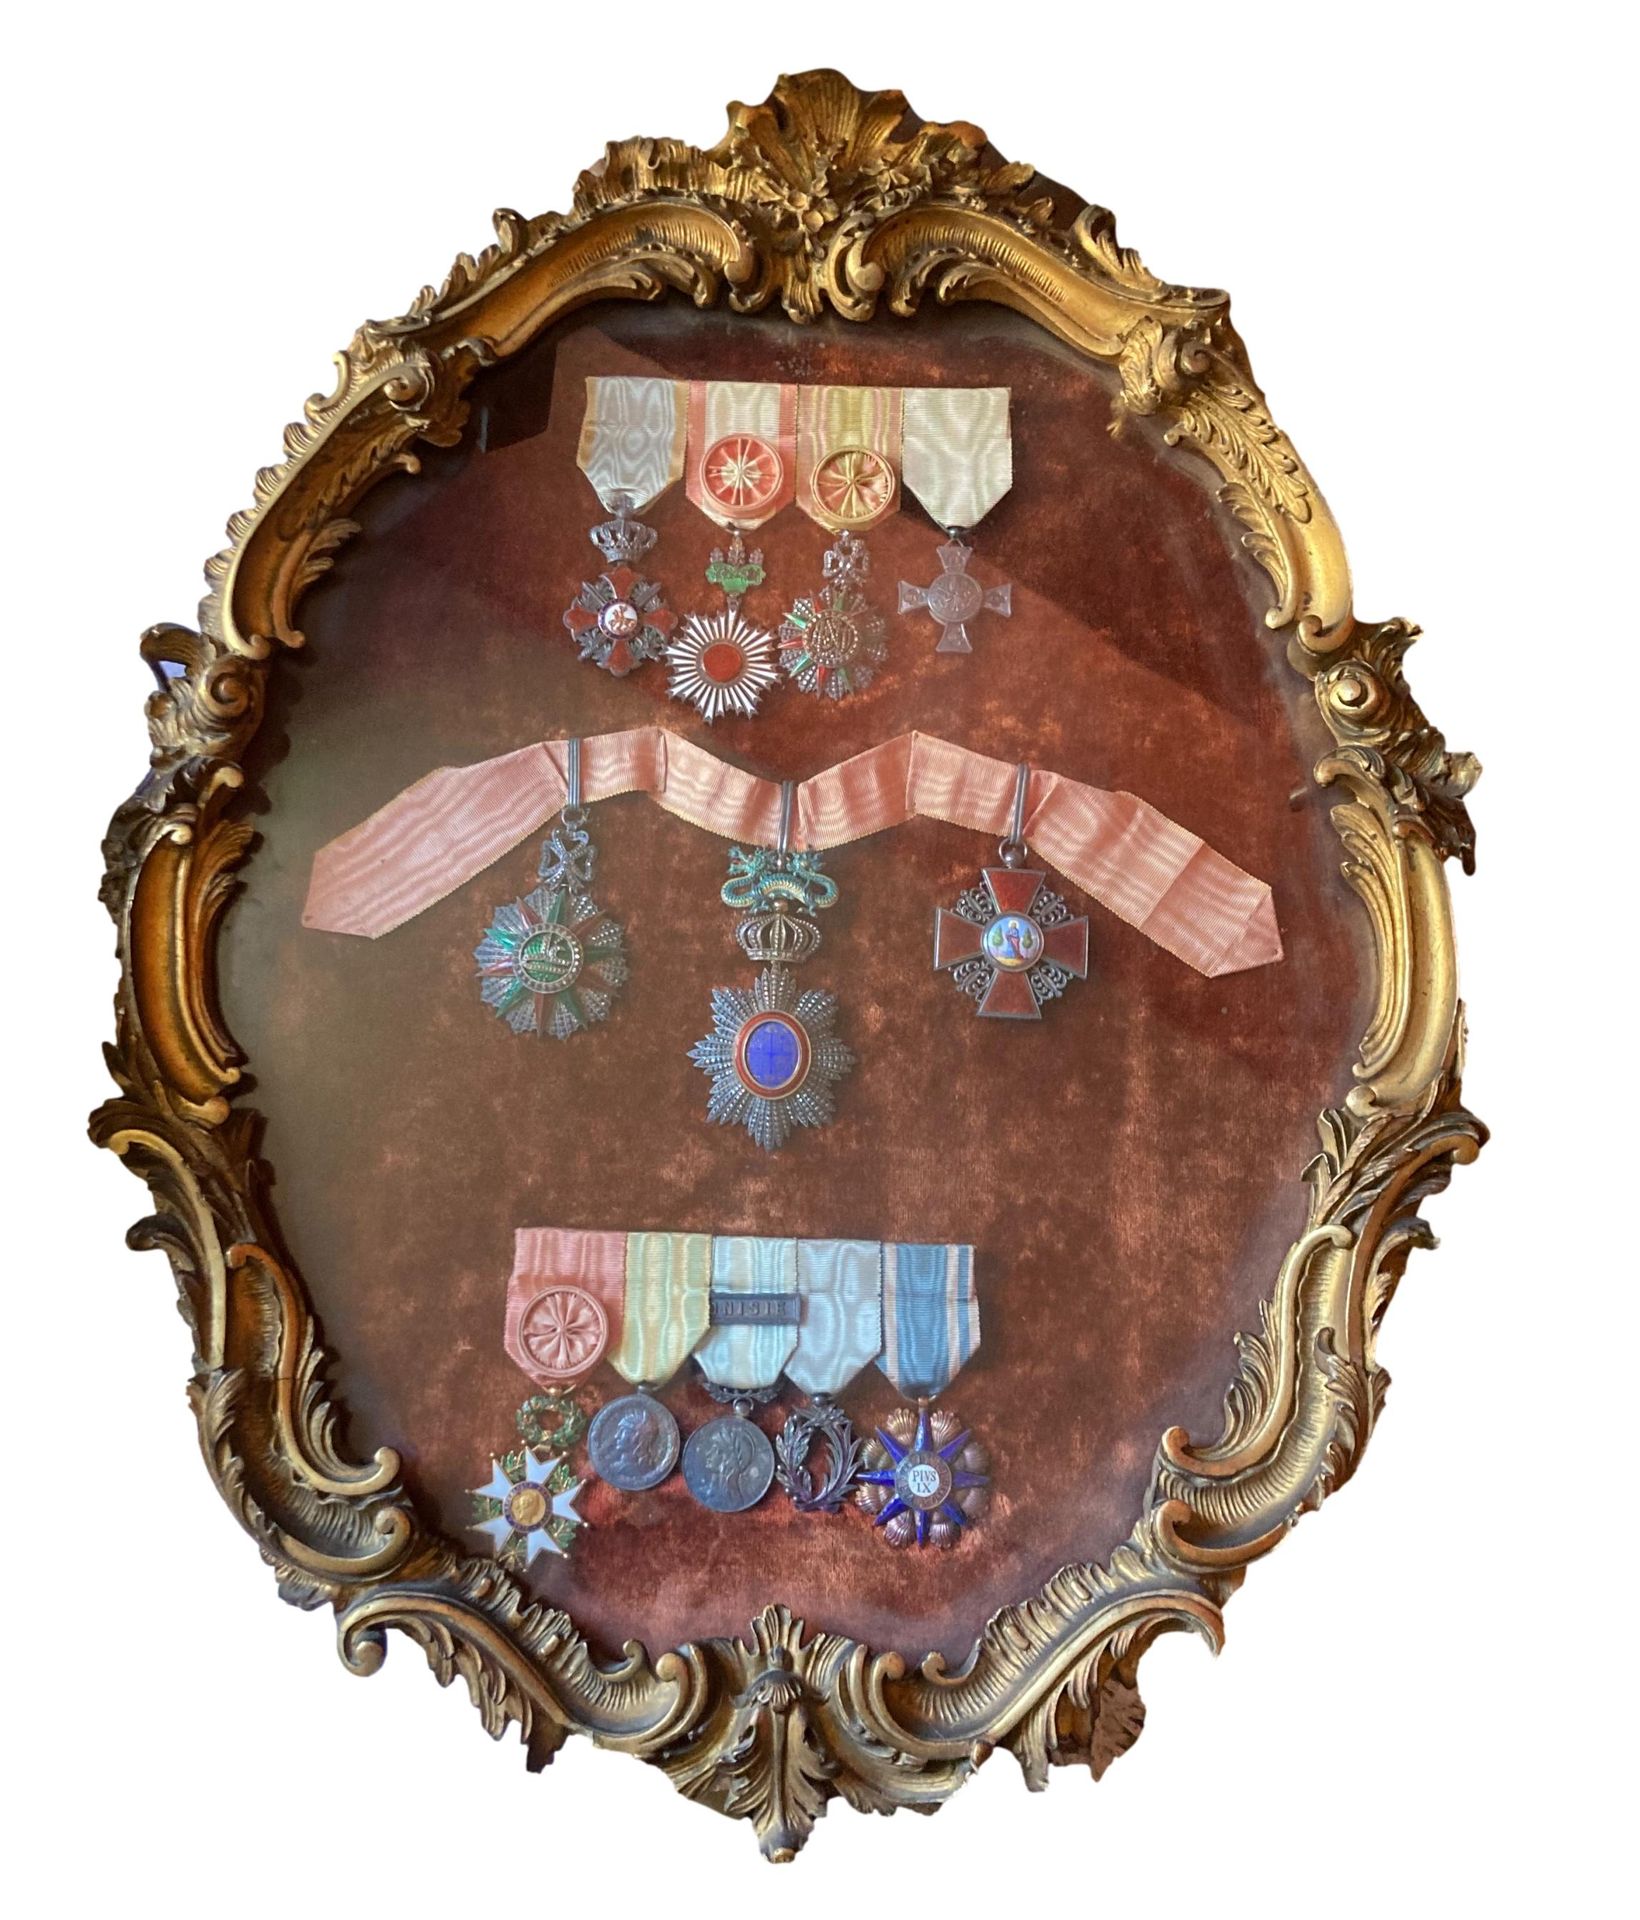 Null 授予阿尔芒-埃切曼中校（1843-1917）的一套奖章，其中包括：
-法国
荣誉军团勋章 
第三共和国时期的军官之星。1870.1889年获颁
镀金金&hellip;